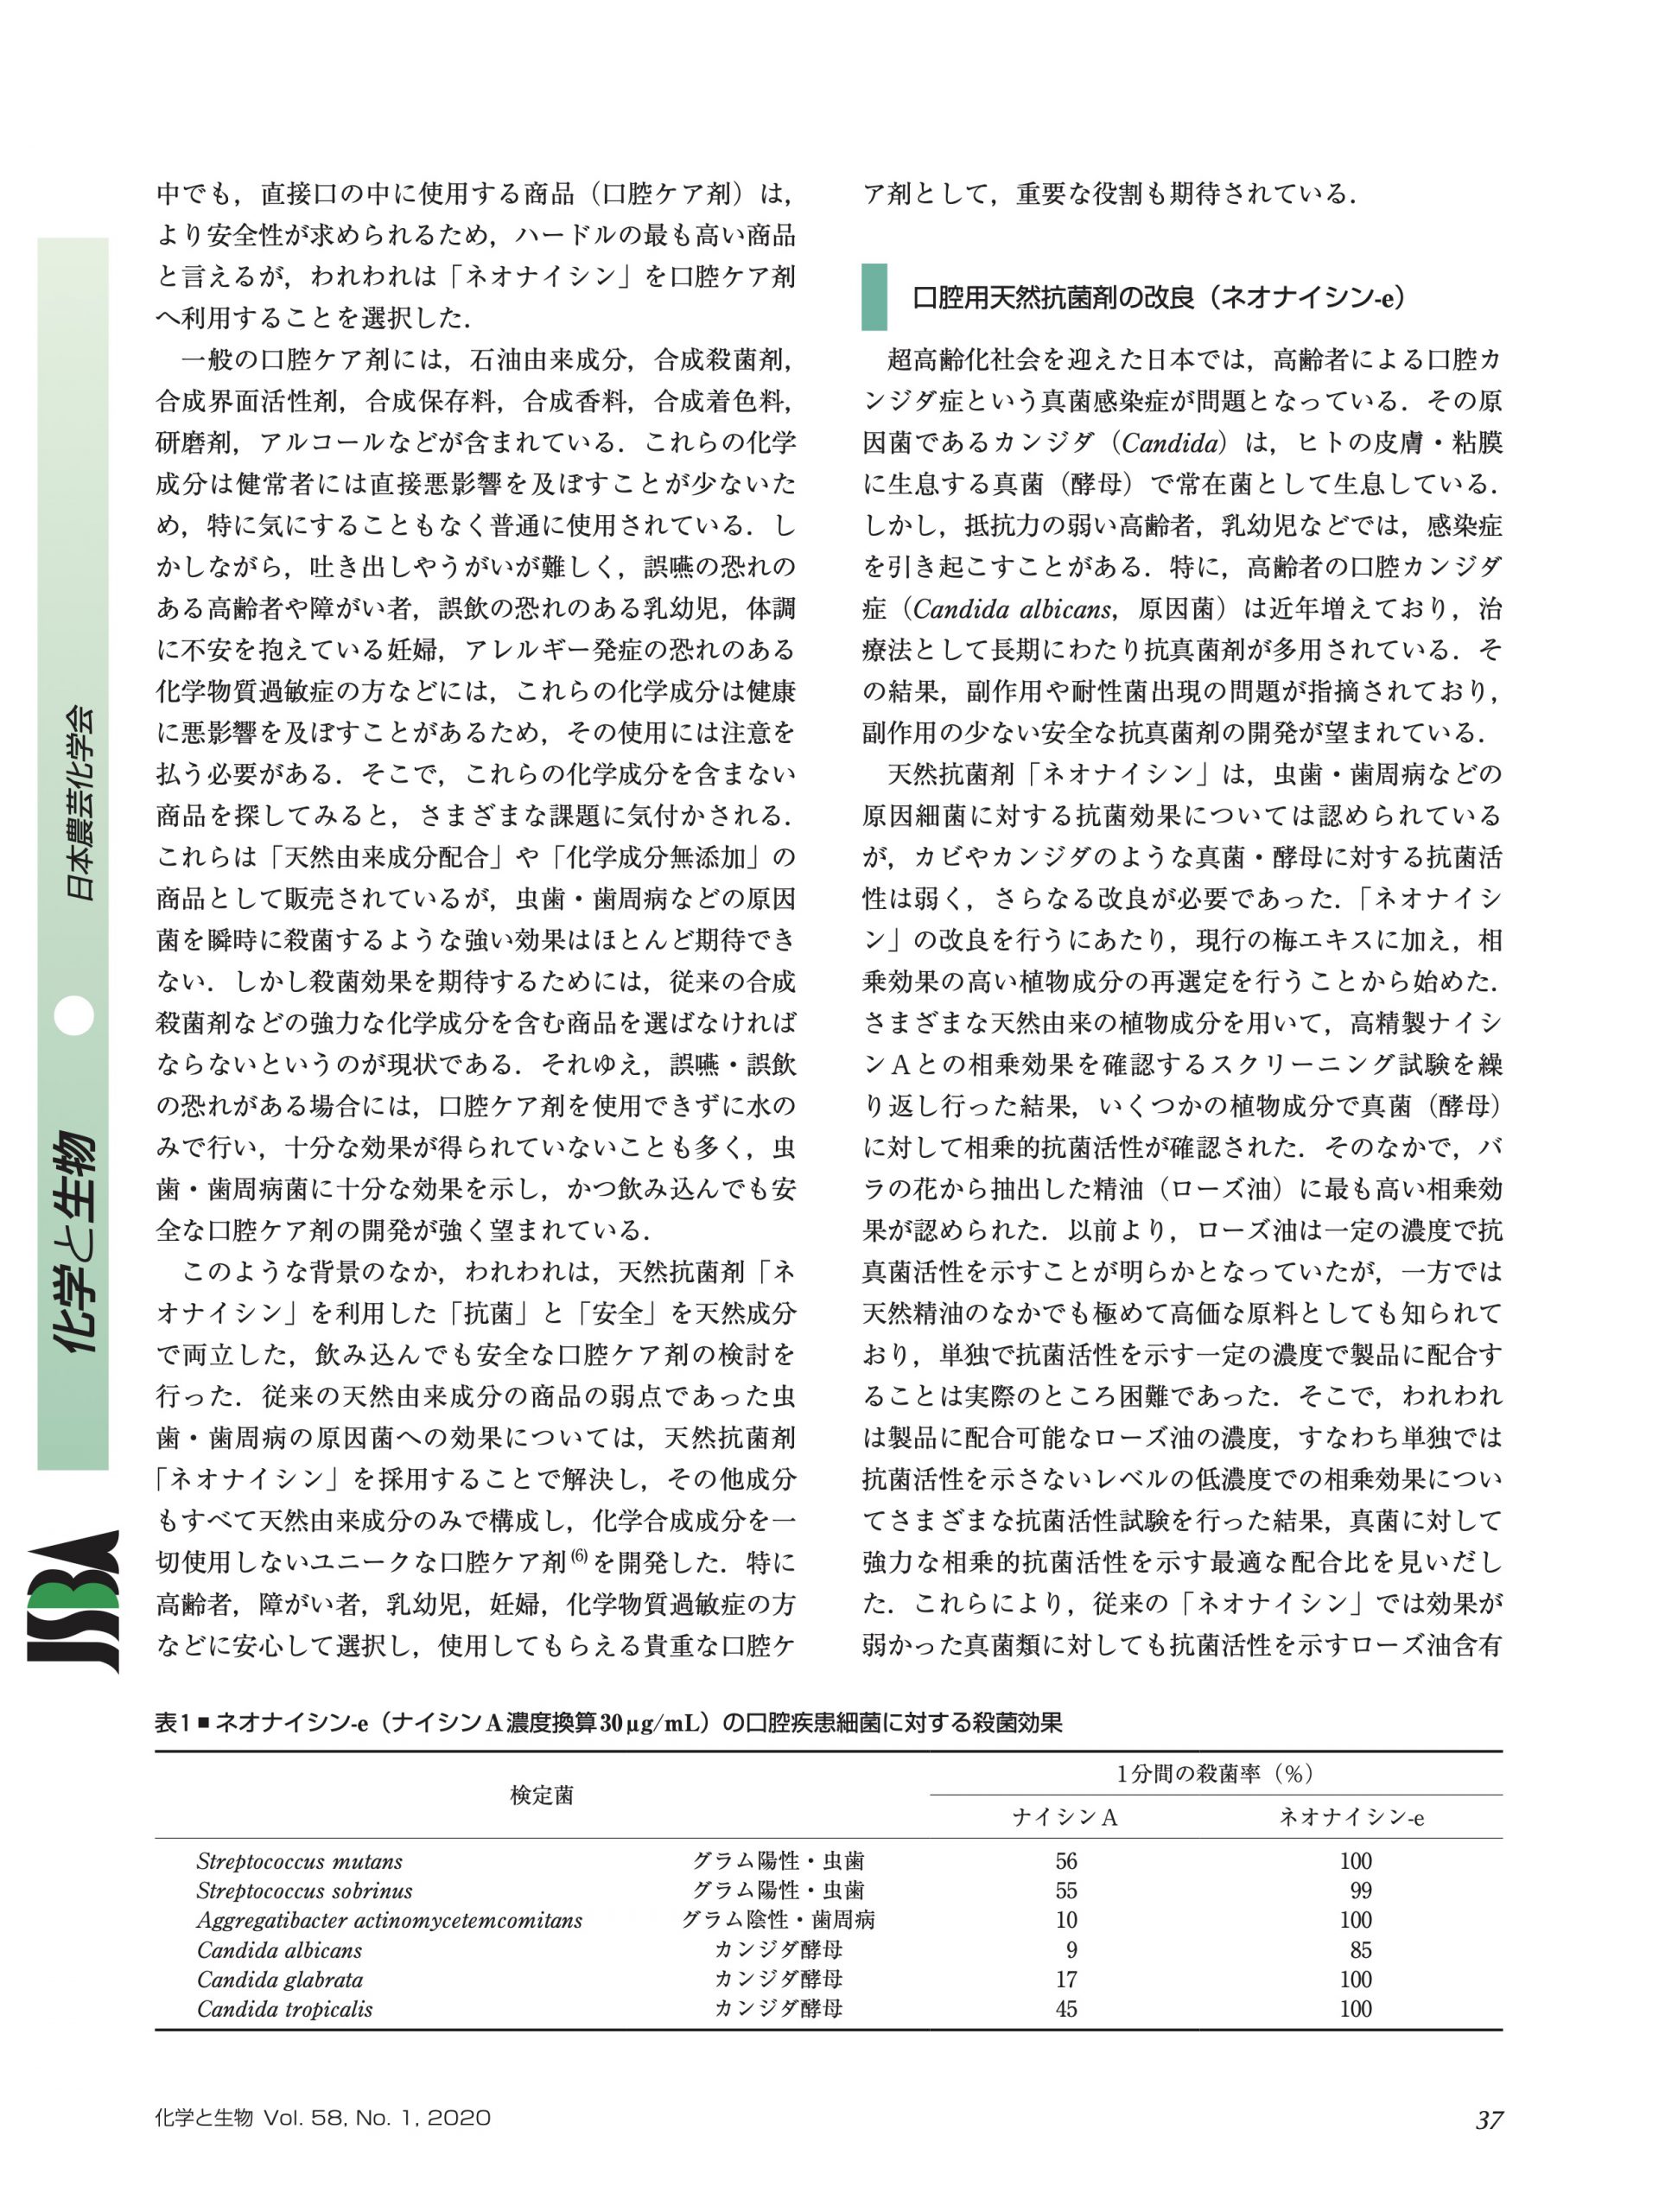 日本農芸化学会の学会誌「化学と生物」にオーラルピースの学術論文が掲載されました - オーラルピース／ORALPEACE